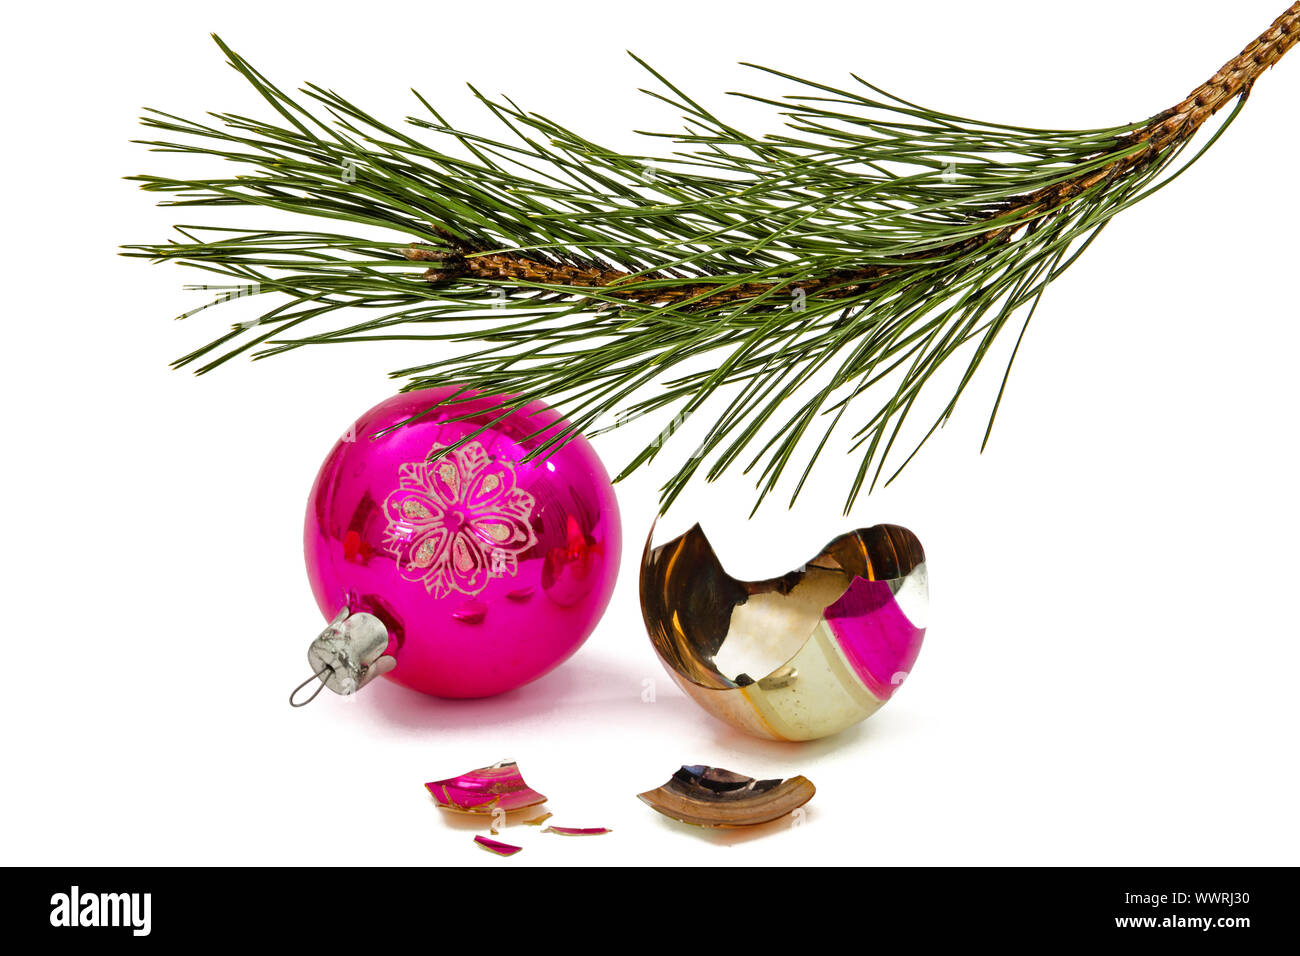 Rotture di palla di Natale si trova al disotto del ramo del pino, isolato su sfondo bianco Foto Stock